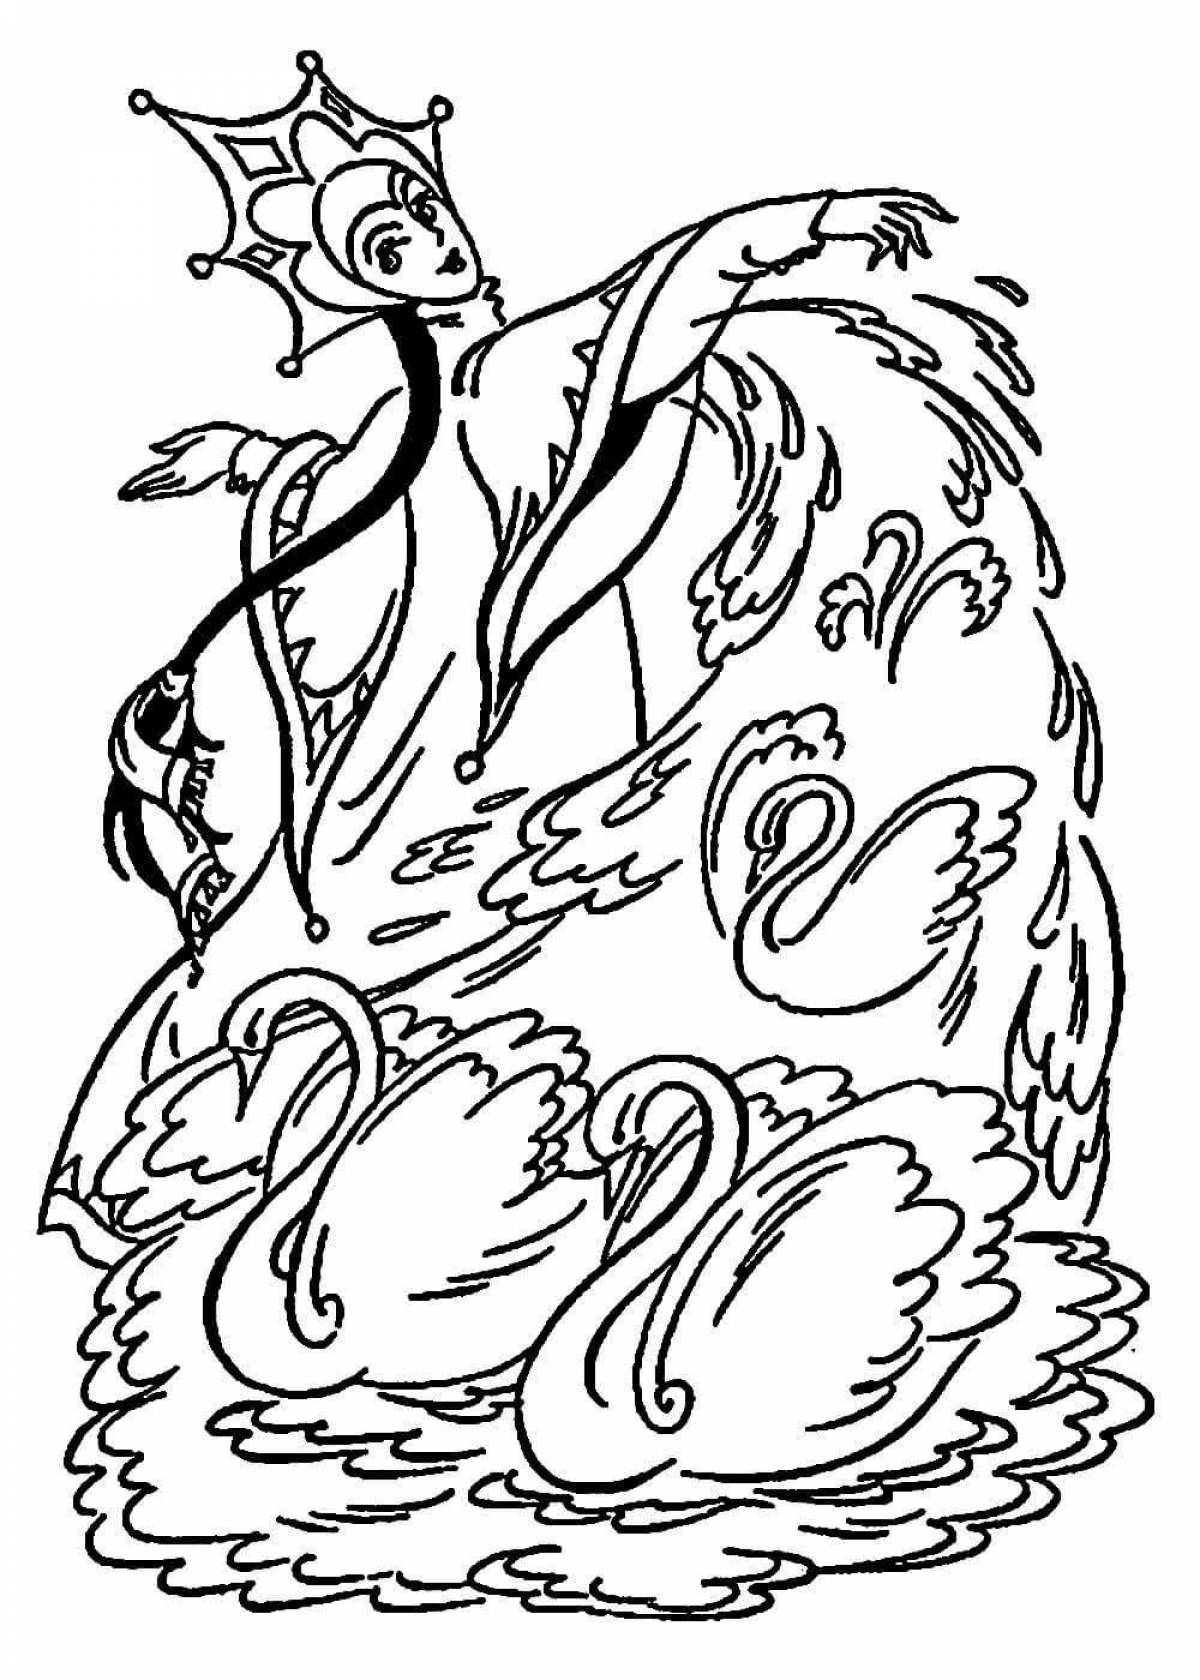 Лебедь из сказки о царе Салтане раскраска